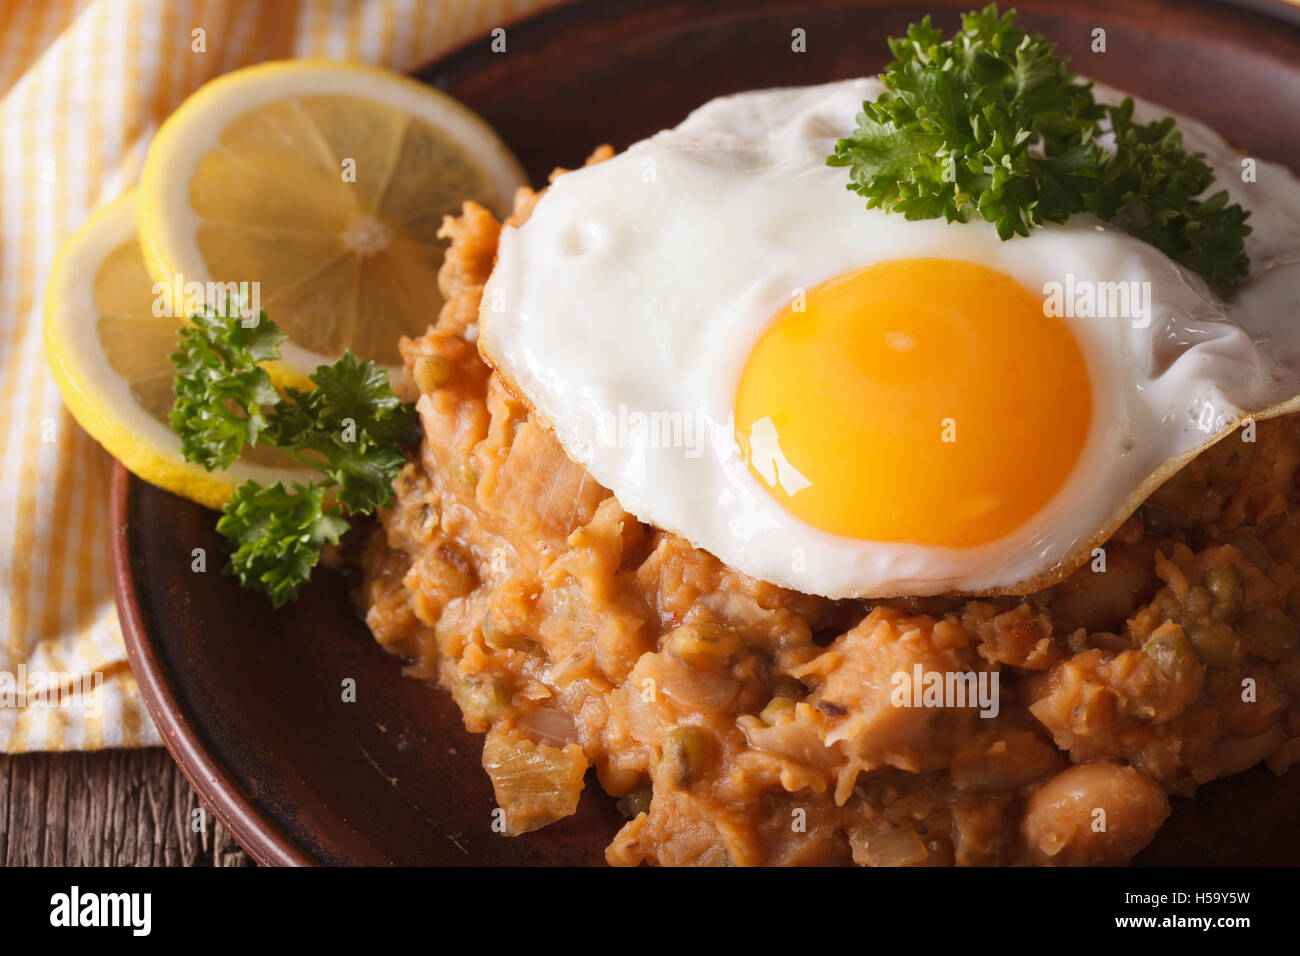 Cocina árabe: ful medames con huevo frito en una placa macro. Horizontal Foto de stock